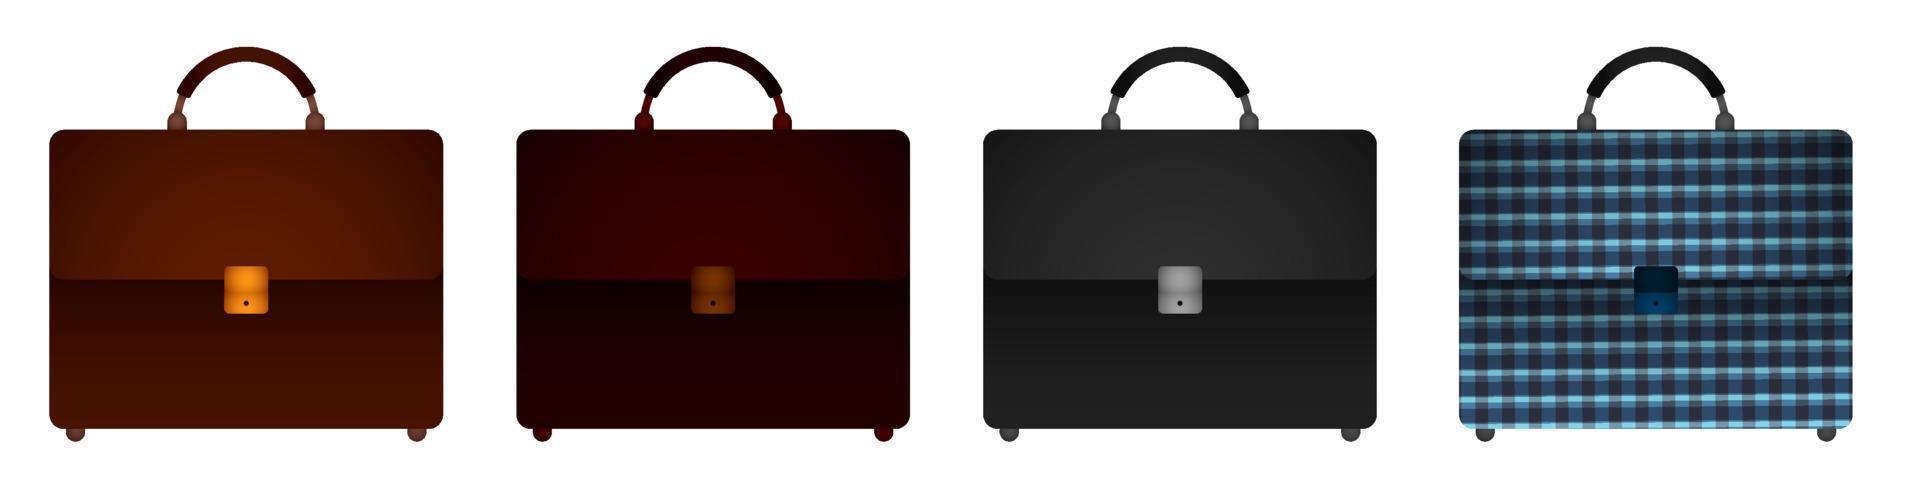 conjunto de iconos maletín, maleta de hombre de negocios para llevar documentos comerciales. almacenamiento de información importante, archivo. vector de dibujos animados de color